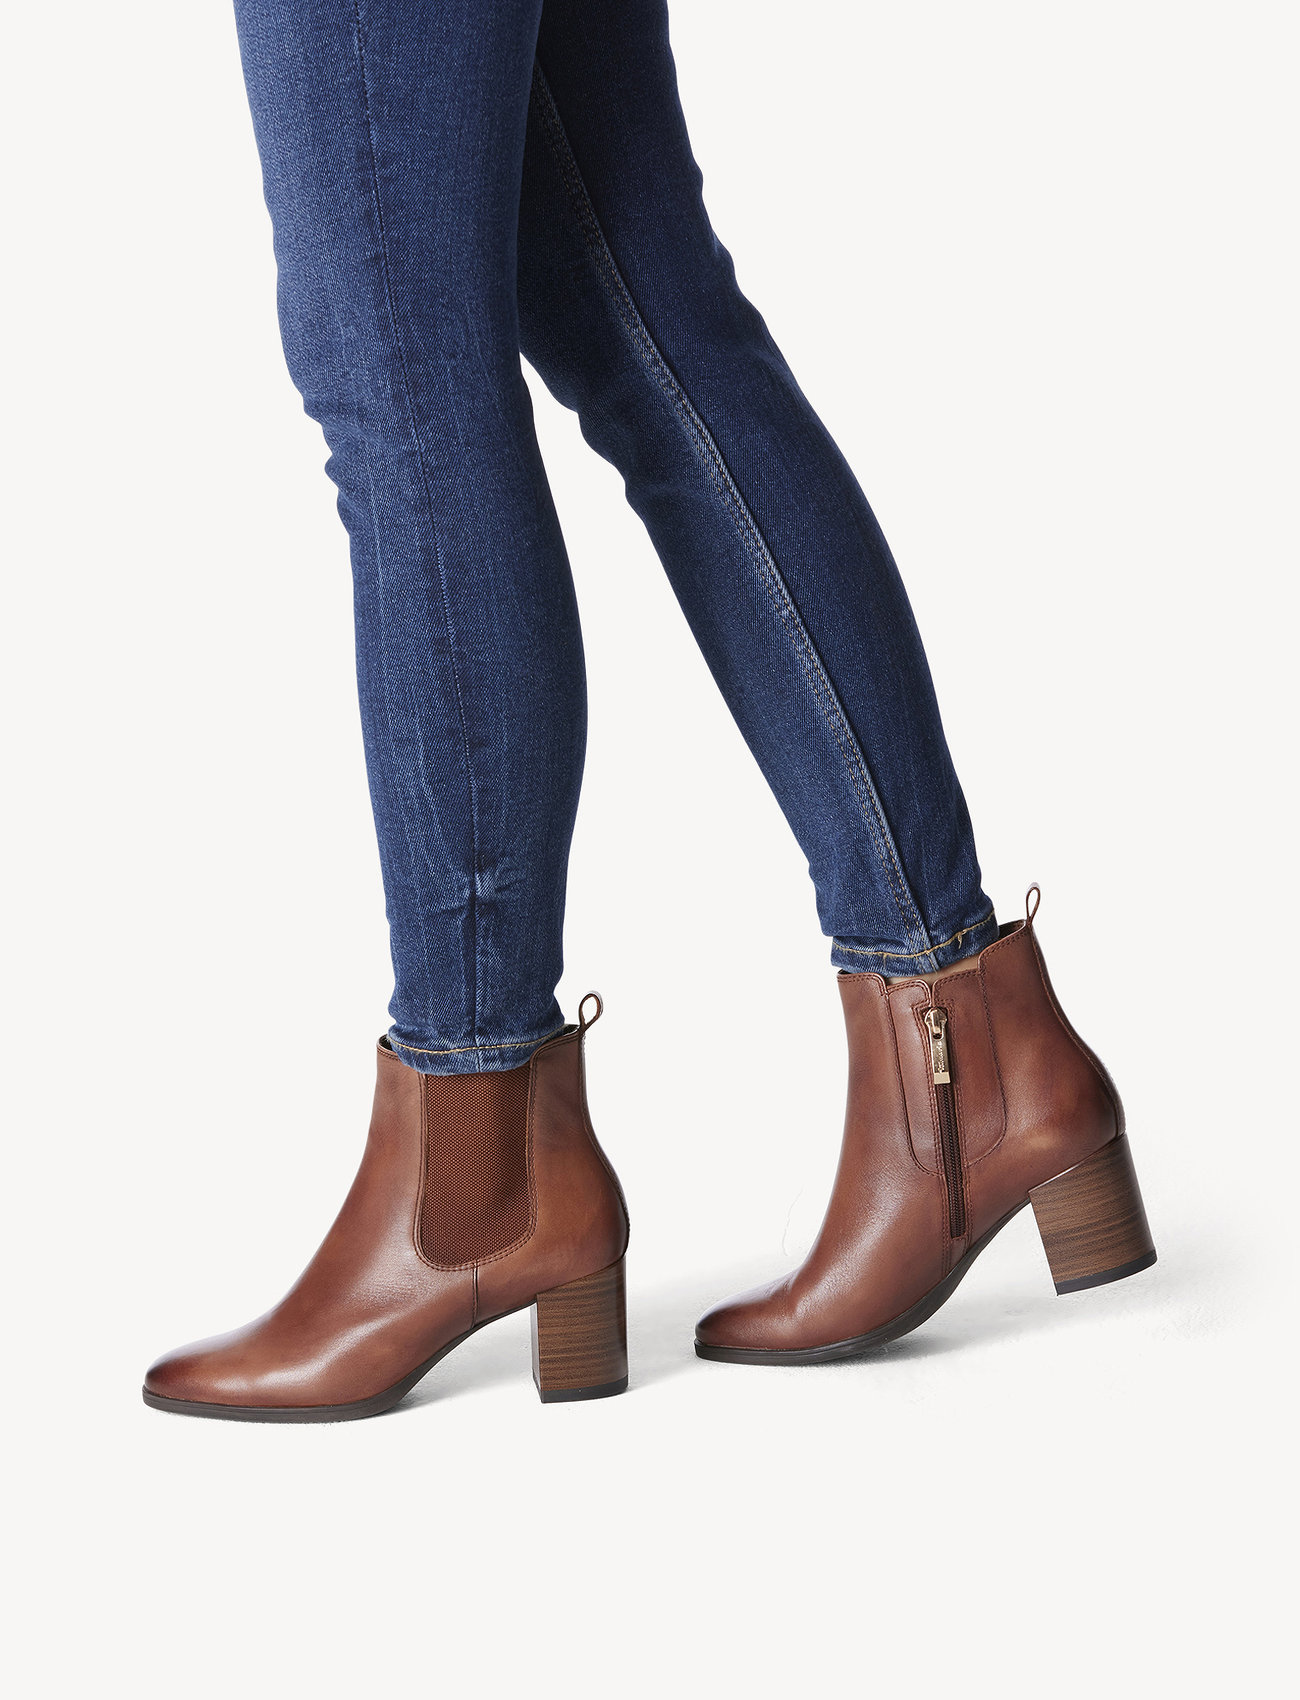 Tamaris - Women Boots - high heel - cognac - 1